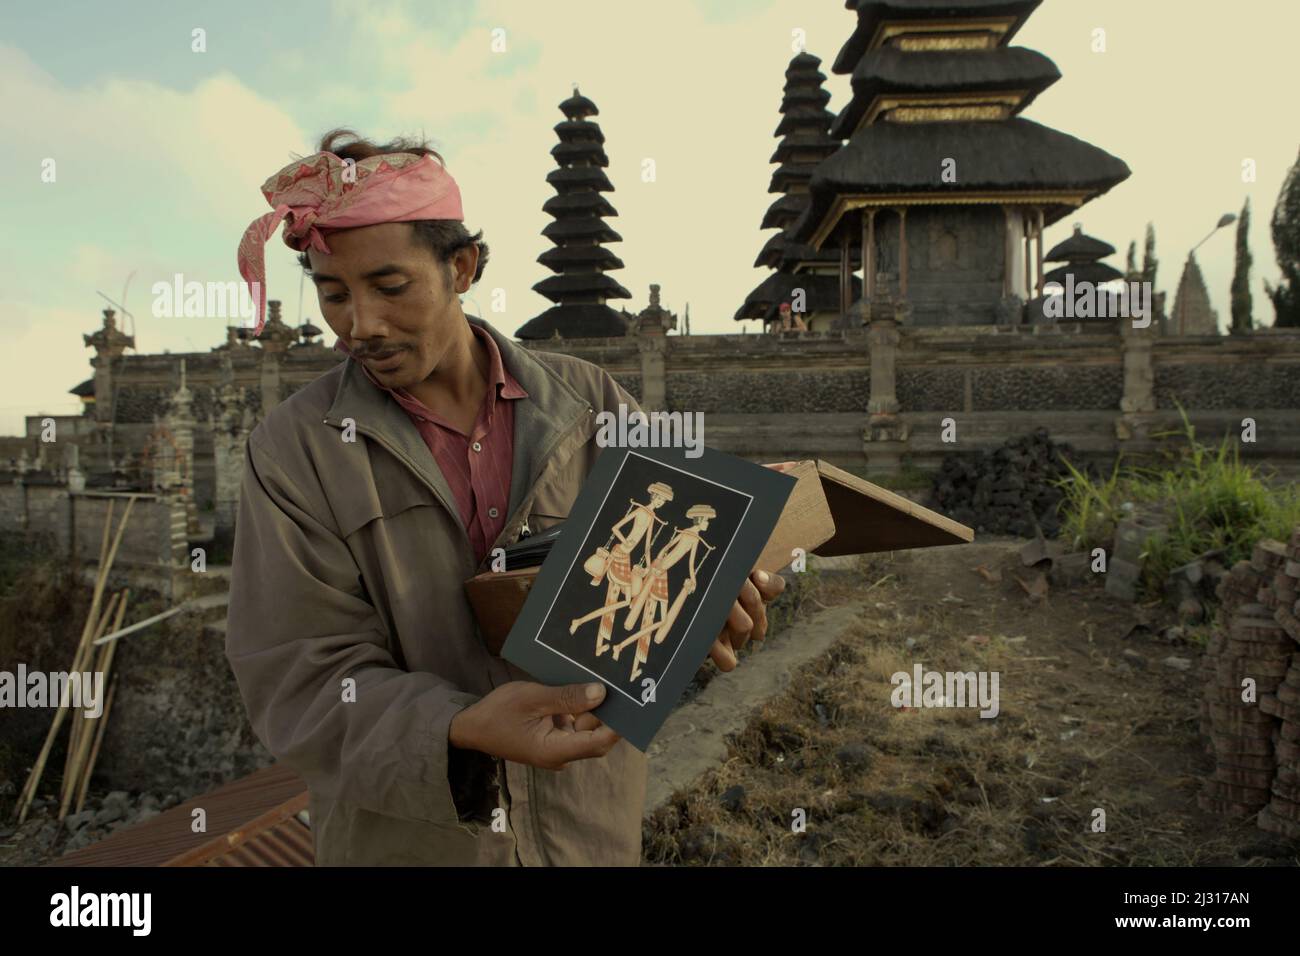 Ein balinesischer Künstler, der gemalte Kunstwerke zum Verkauf in Kintamani, Bangli, Bali, Indonesien zeigt. Bali wurde im März 2022 für Touristen wiedereröffnet, nachdem es aufgrund von Covid-19 fast zwei Jahre lang geschlossen wurde, da geimpfte Reisende bei der Ankunft nicht mehr in Quarantäne gehen müssten, was die Hoffnung auf vom Tourismus abhängige Dörfer, die von wirtschaftlichen Verlusten betroffen sind, verstärkt. © Reynold Sumayku Stockfoto